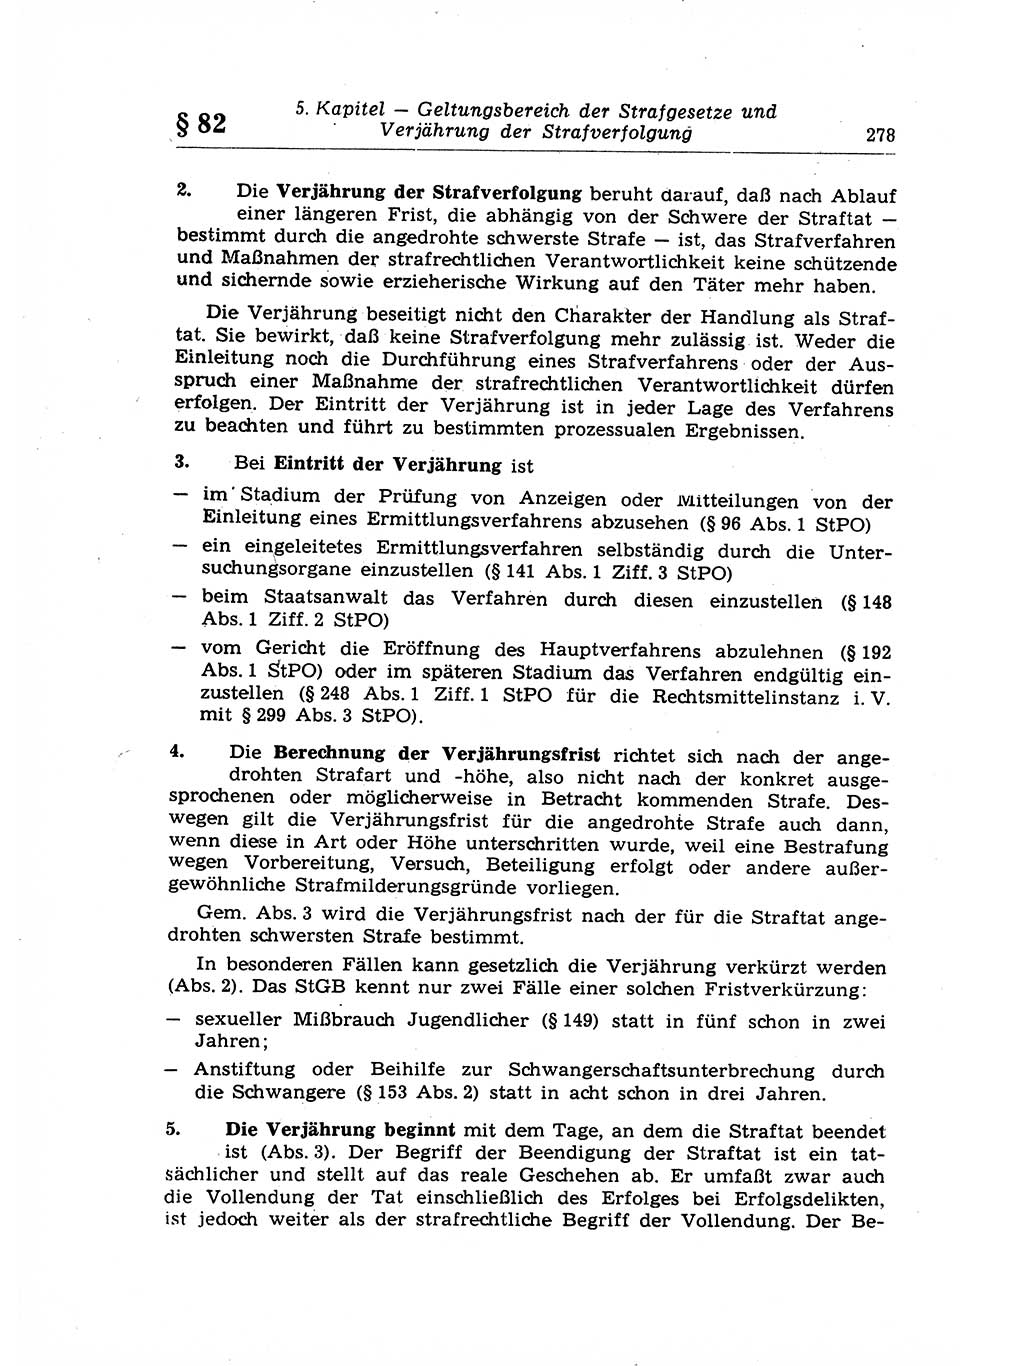 Strafrecht der Deutschen Demokratischen Republik (DDR), Lehrkommentar zum Strafgesetzbuch (StGB), Allgemeiner Teil 1969, Seite 278 (Strafr. DDR Lehrkomm. StGB AT 1969, S. 278)